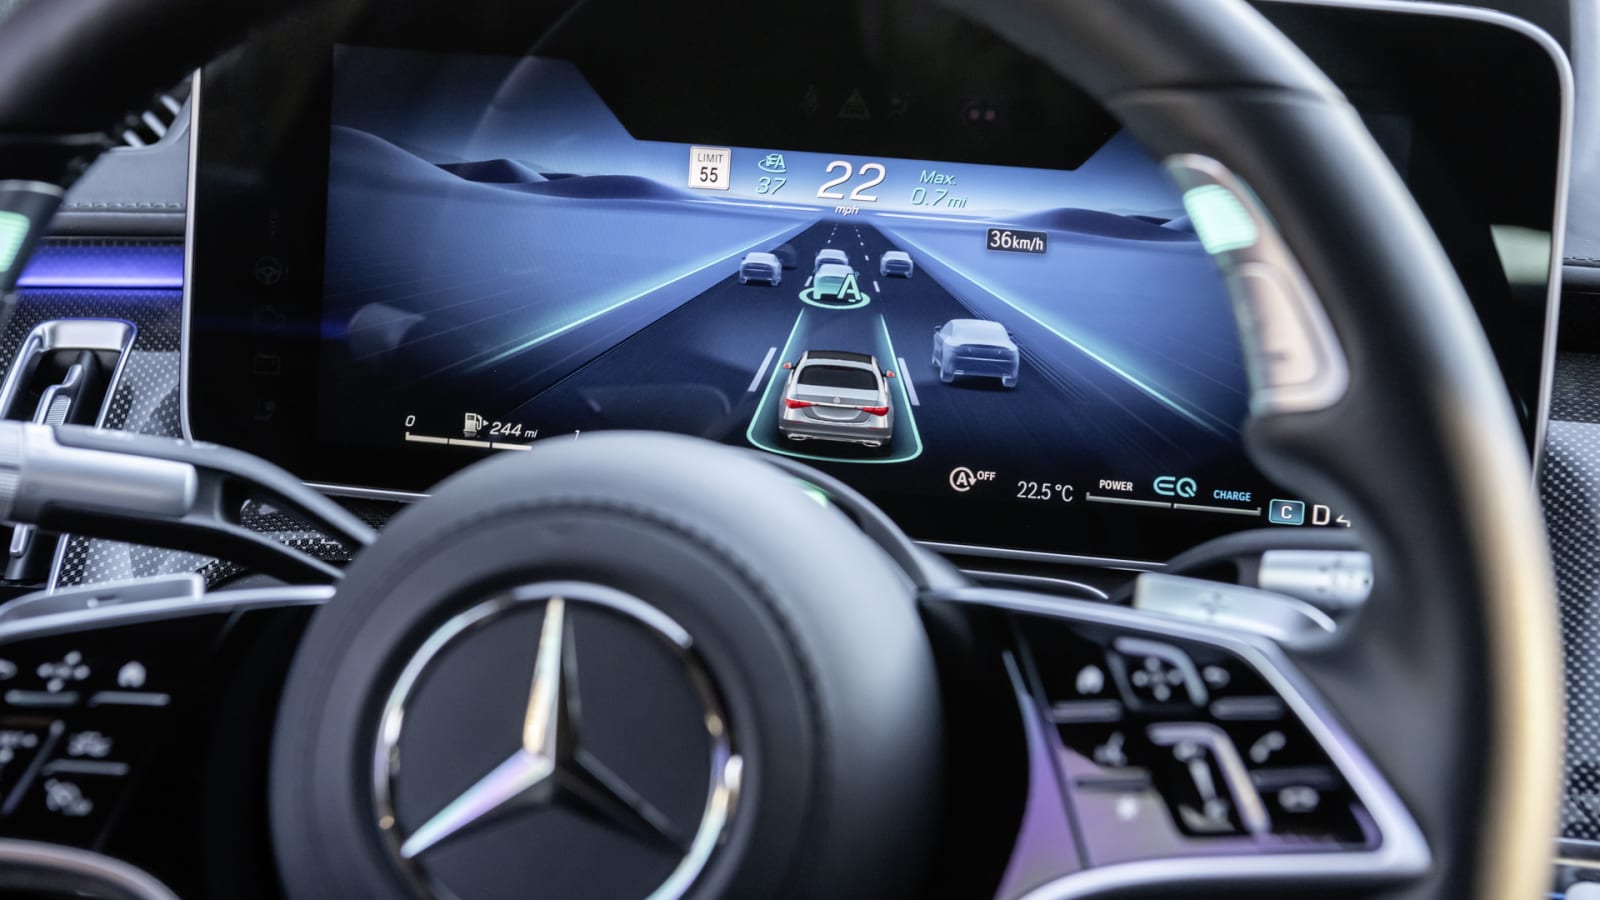 Der neue Mercedes Drive Pilot fordert Tesla mit Level-3-Technik heraus